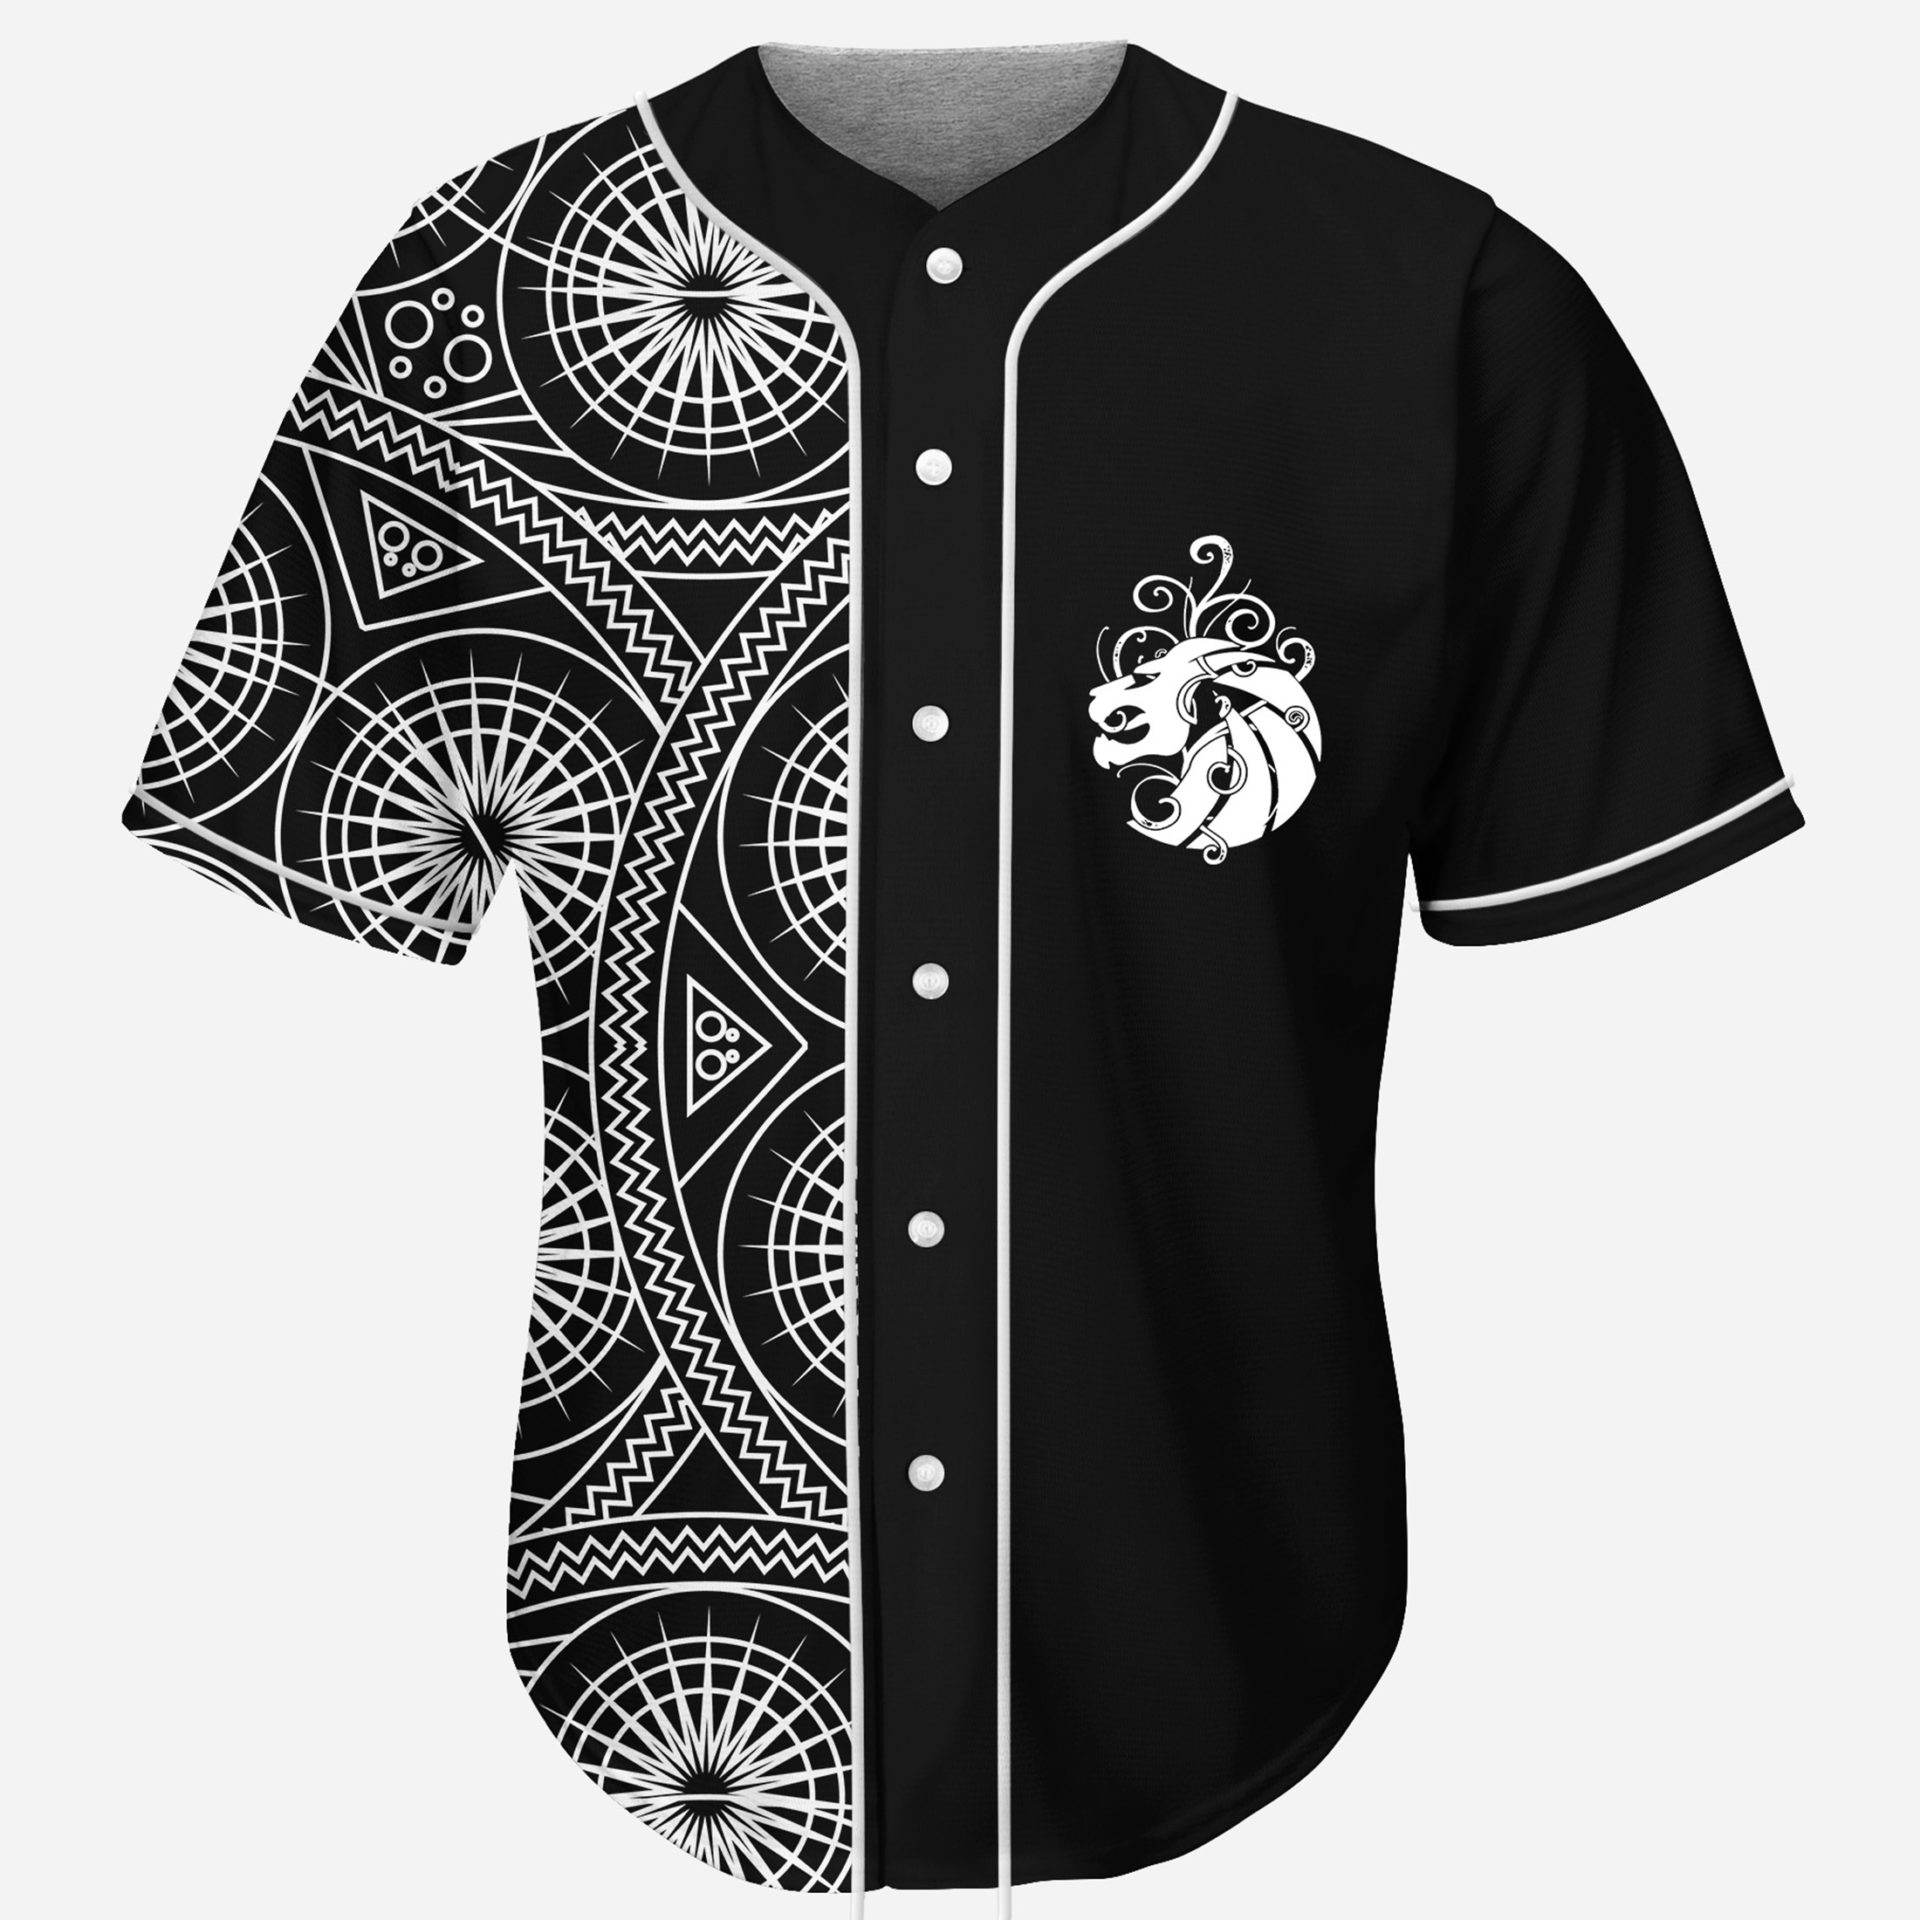 Seven lions geometric split cool design rave baseball jersey for EDM  festivals